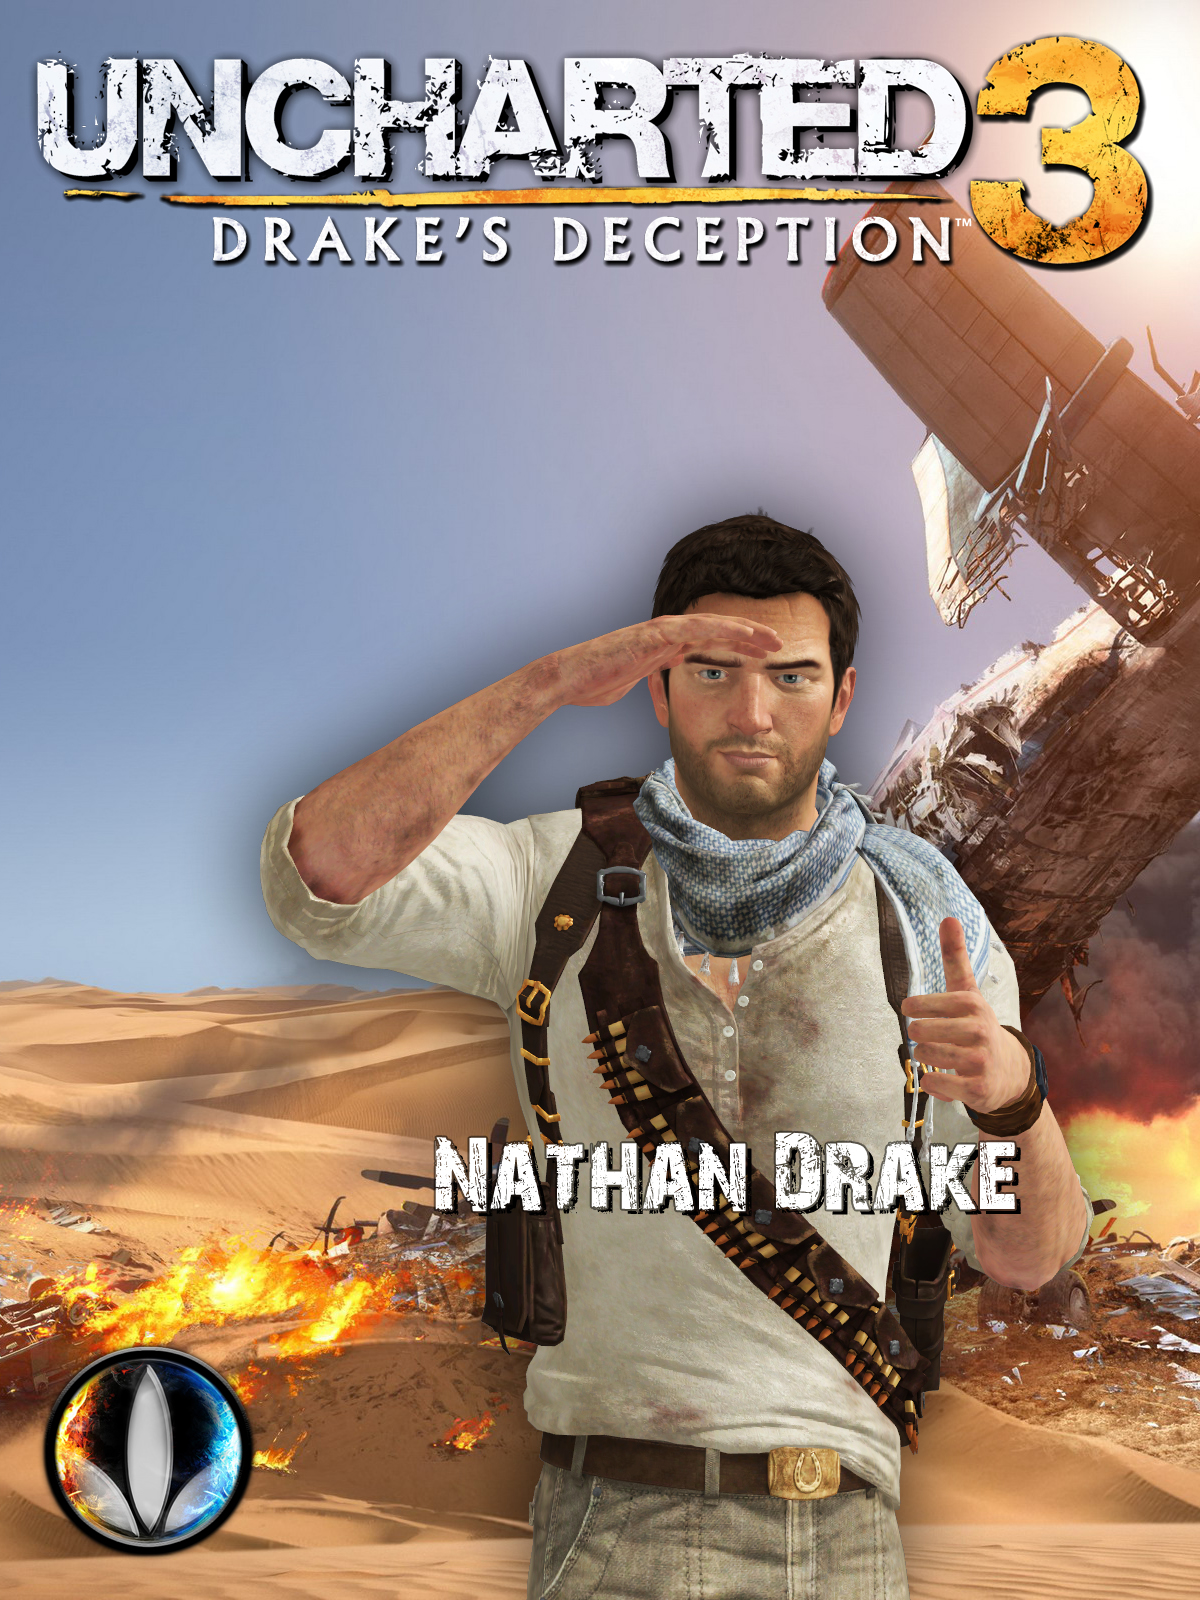 Nathan Drake - Desert - Uncharted 3 by junkymana on DeviantArt